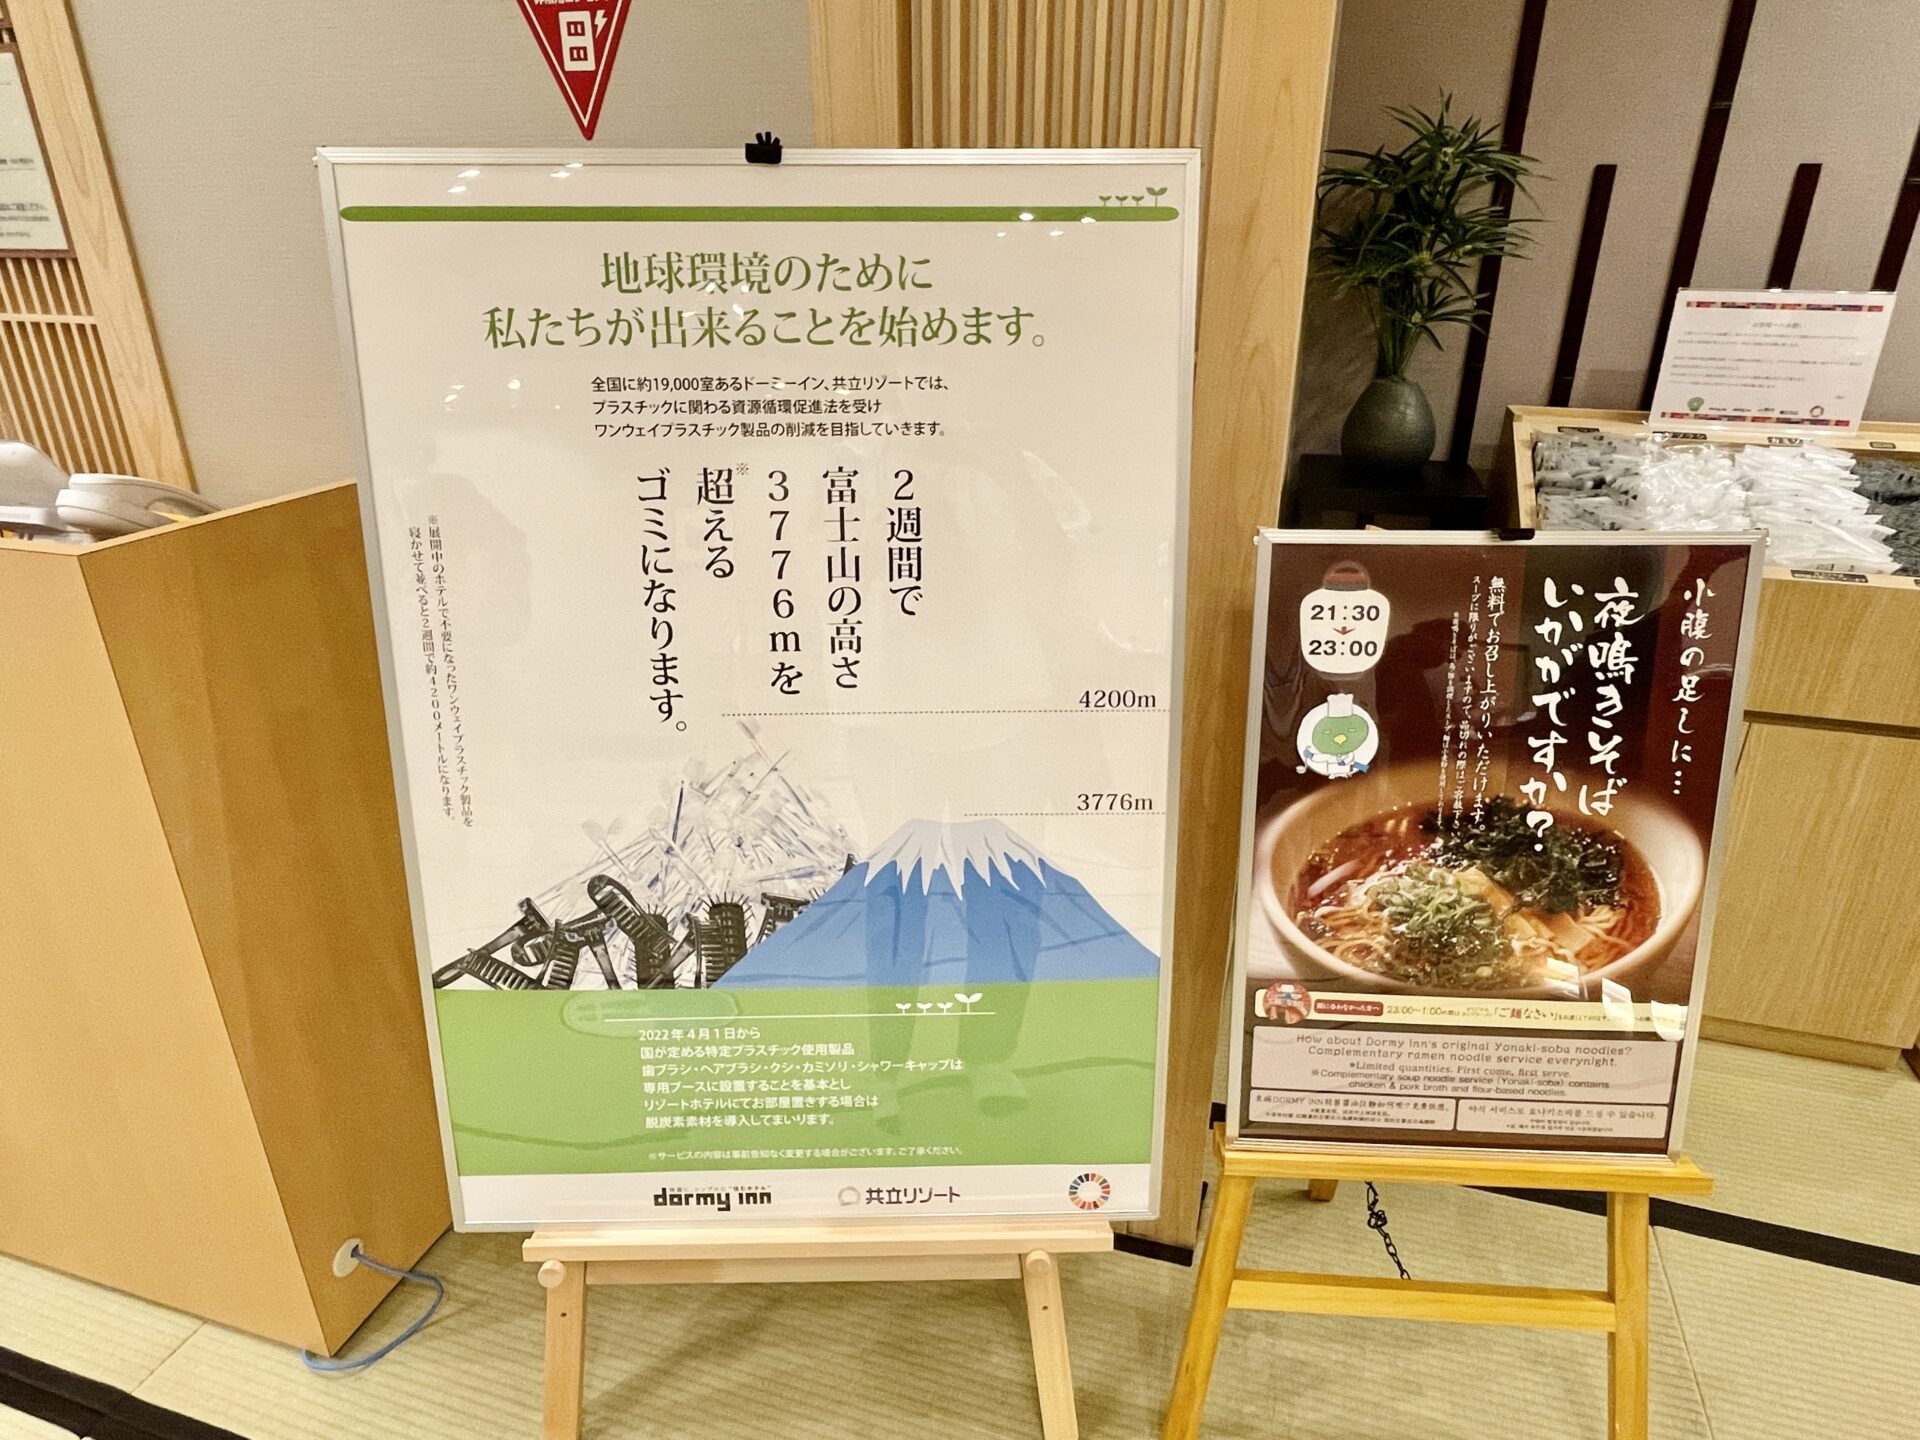 「御宿 野乃 浅草」ドーミーイン/共立リゾートの環境保全への取り組み